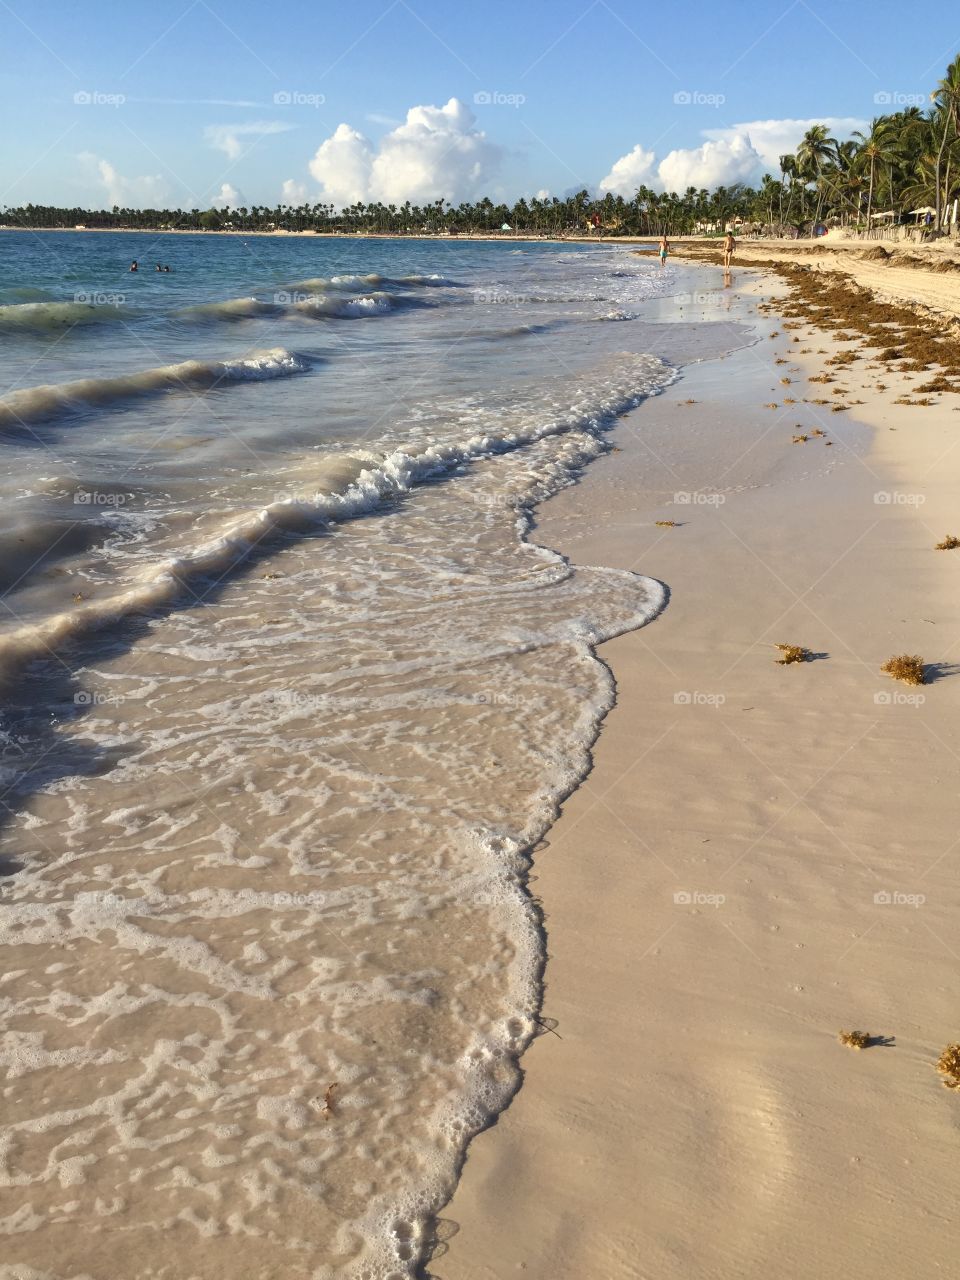 Waves on the beach 